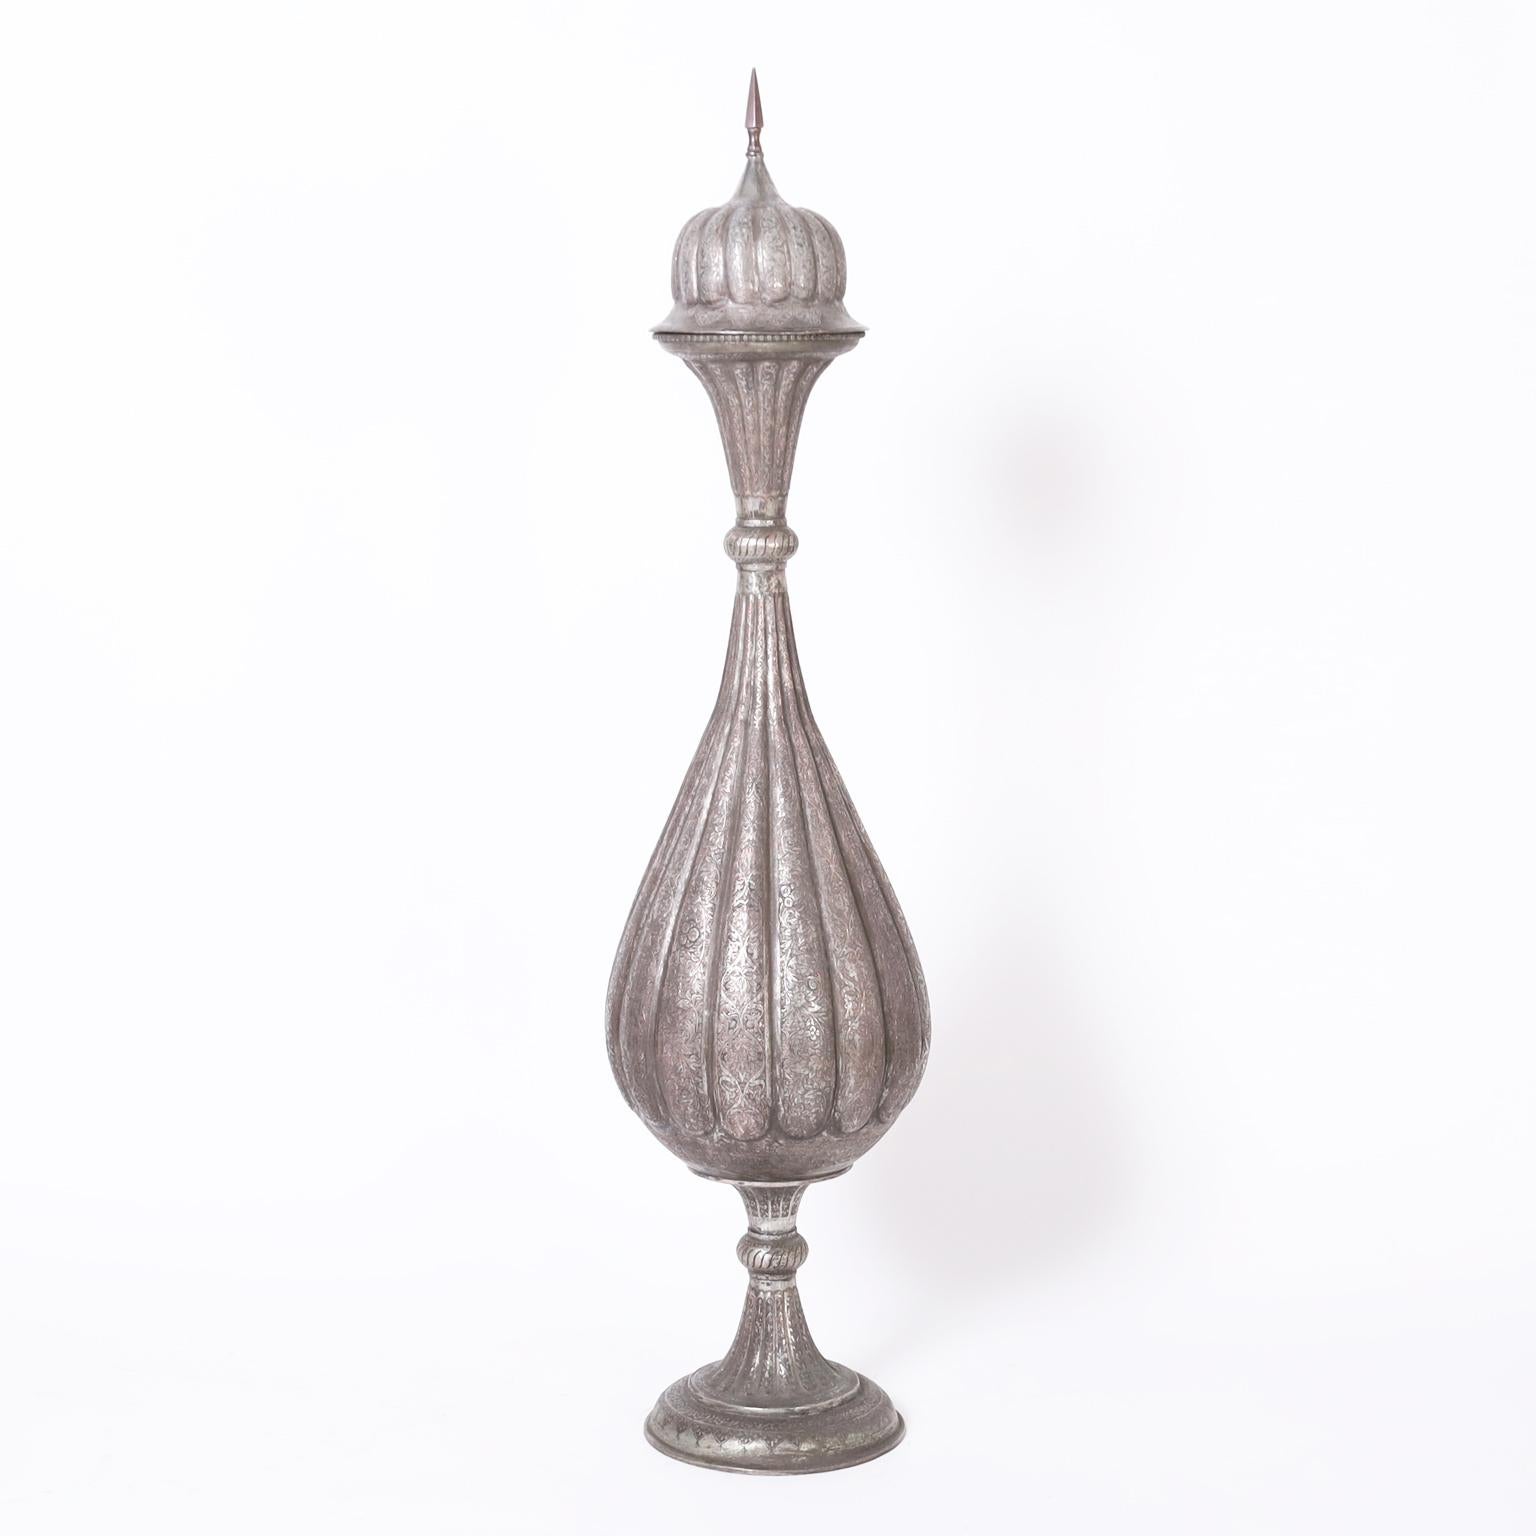 Paire d'urnes antiques anglo-indiennes à couvercle, fabriquées à la main en argent sur cuivre dans une forme exotique spectaculaire, avec d'ambitieux motifs floraux gravés à la main sur l'ensemble du couvercle. Le meilleur du genre.